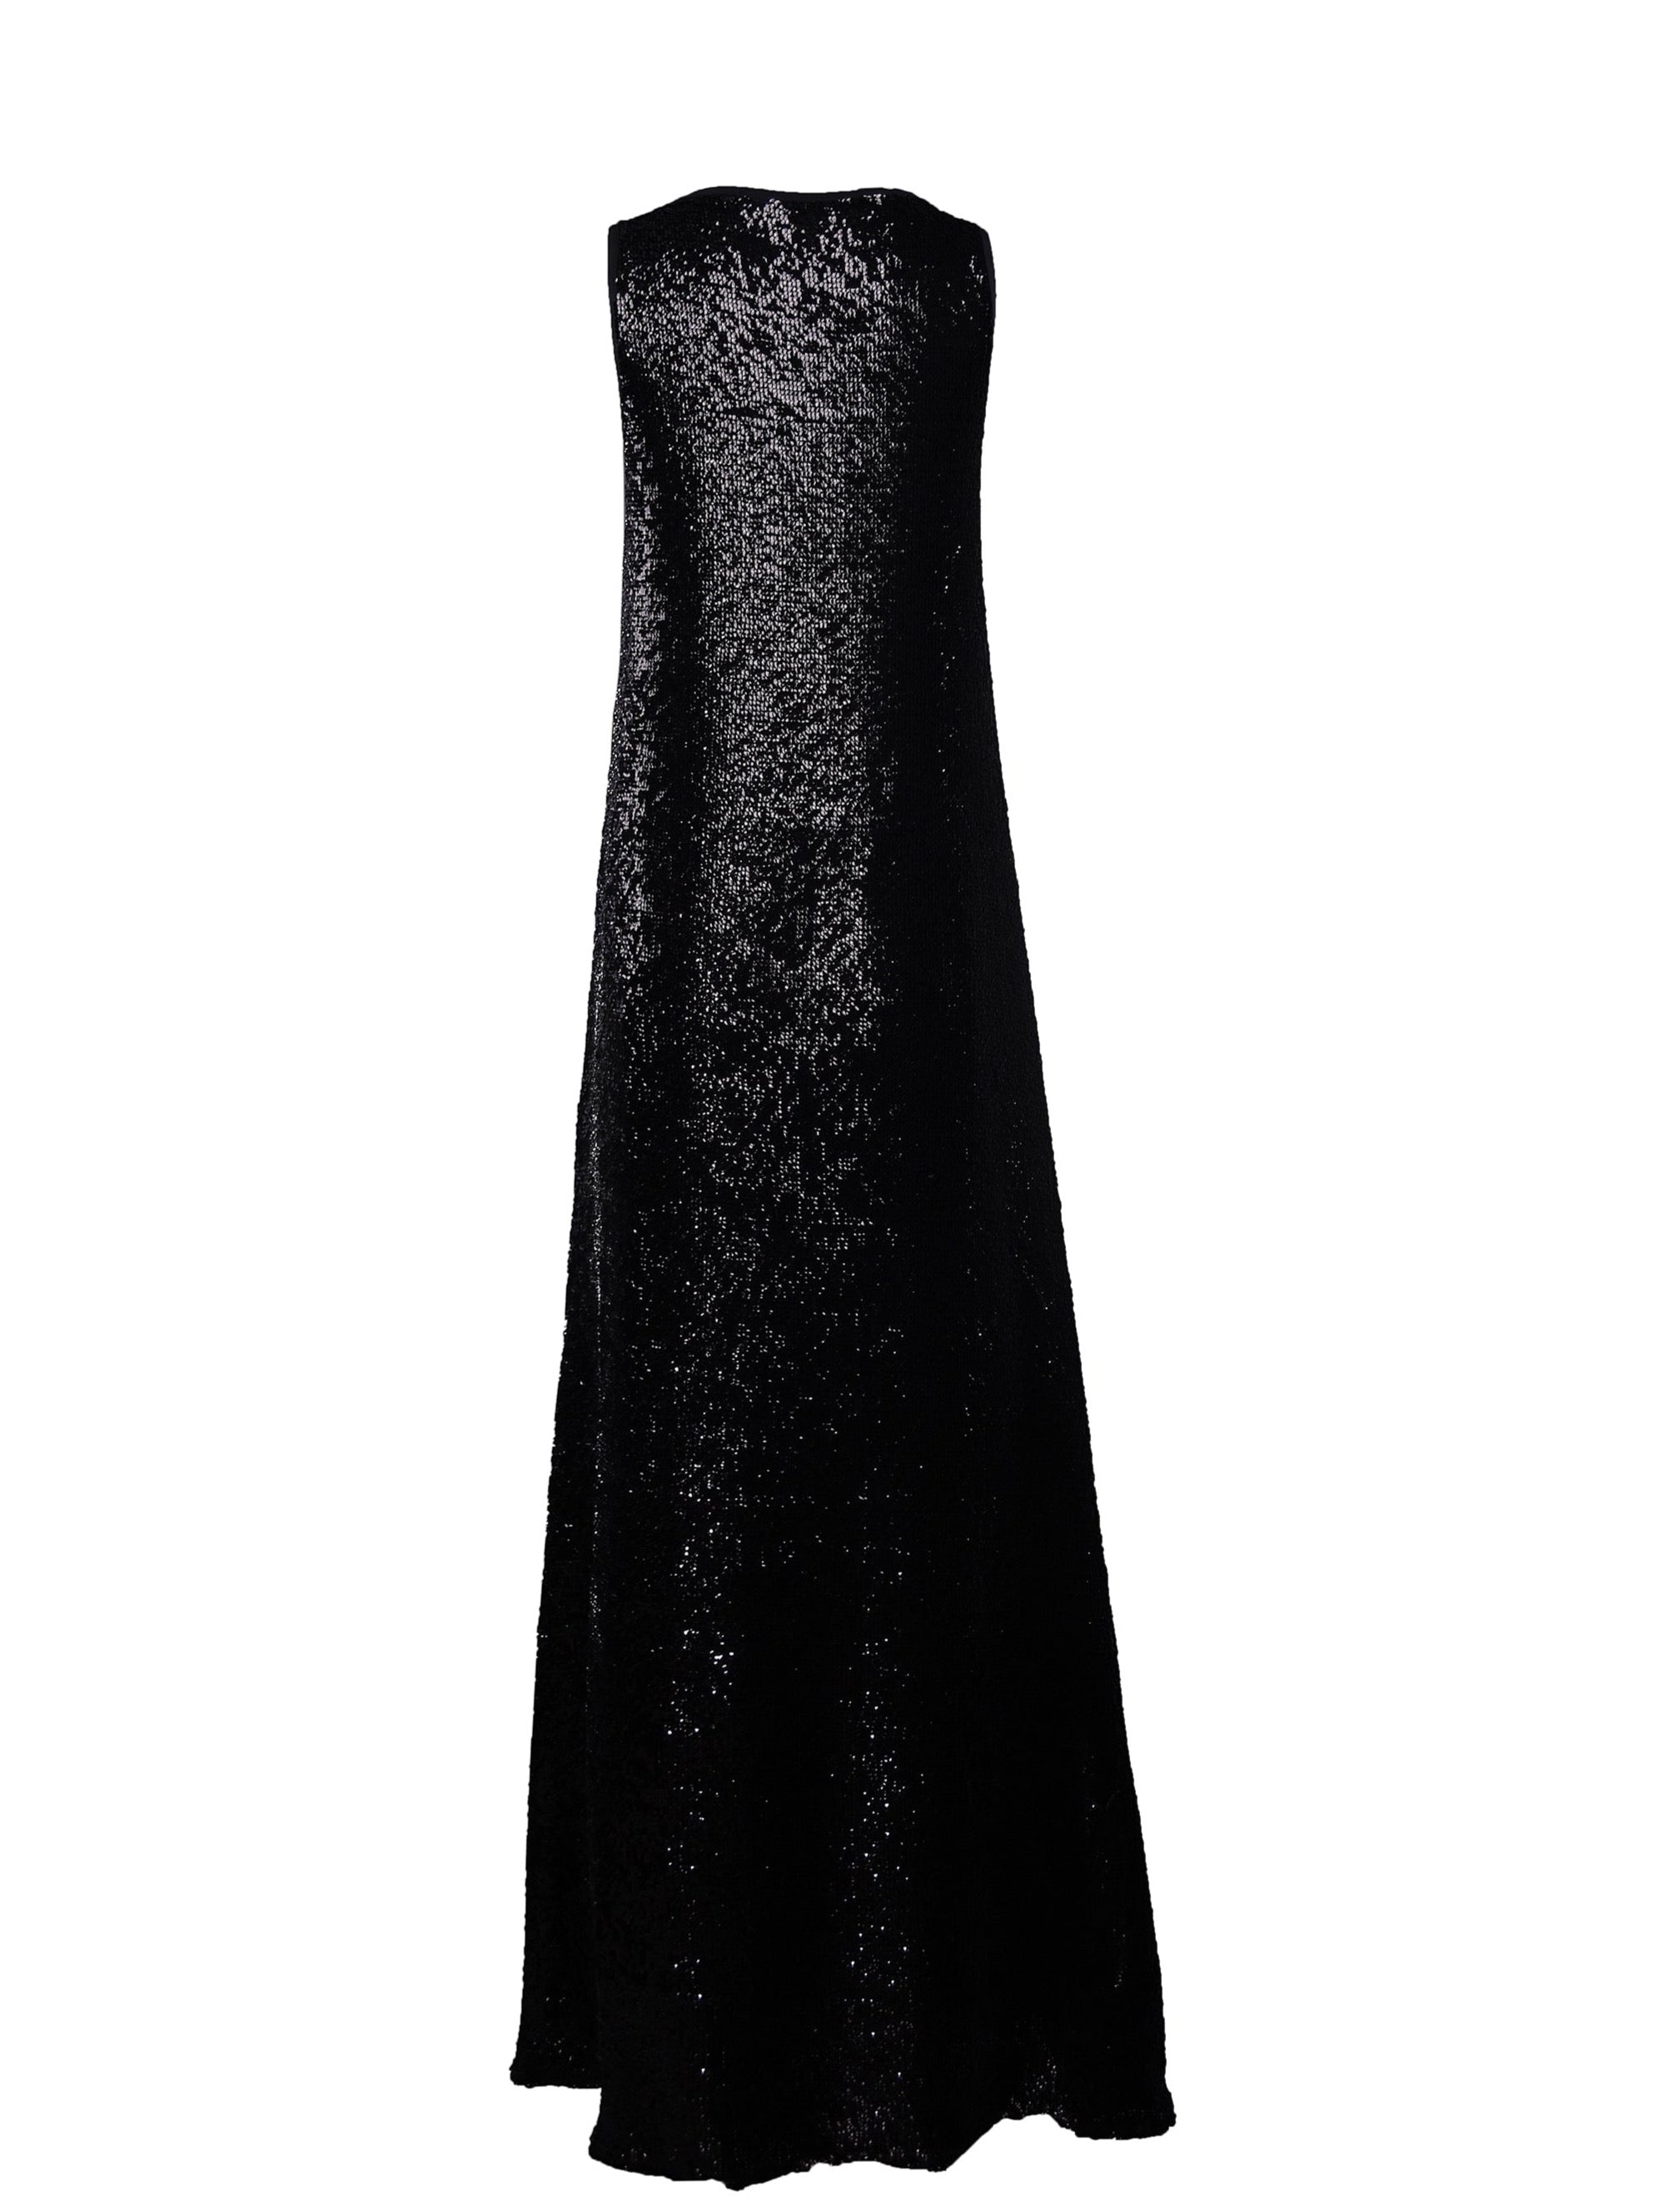 Black Sequin Floor Length Dress - Bespoke Piece